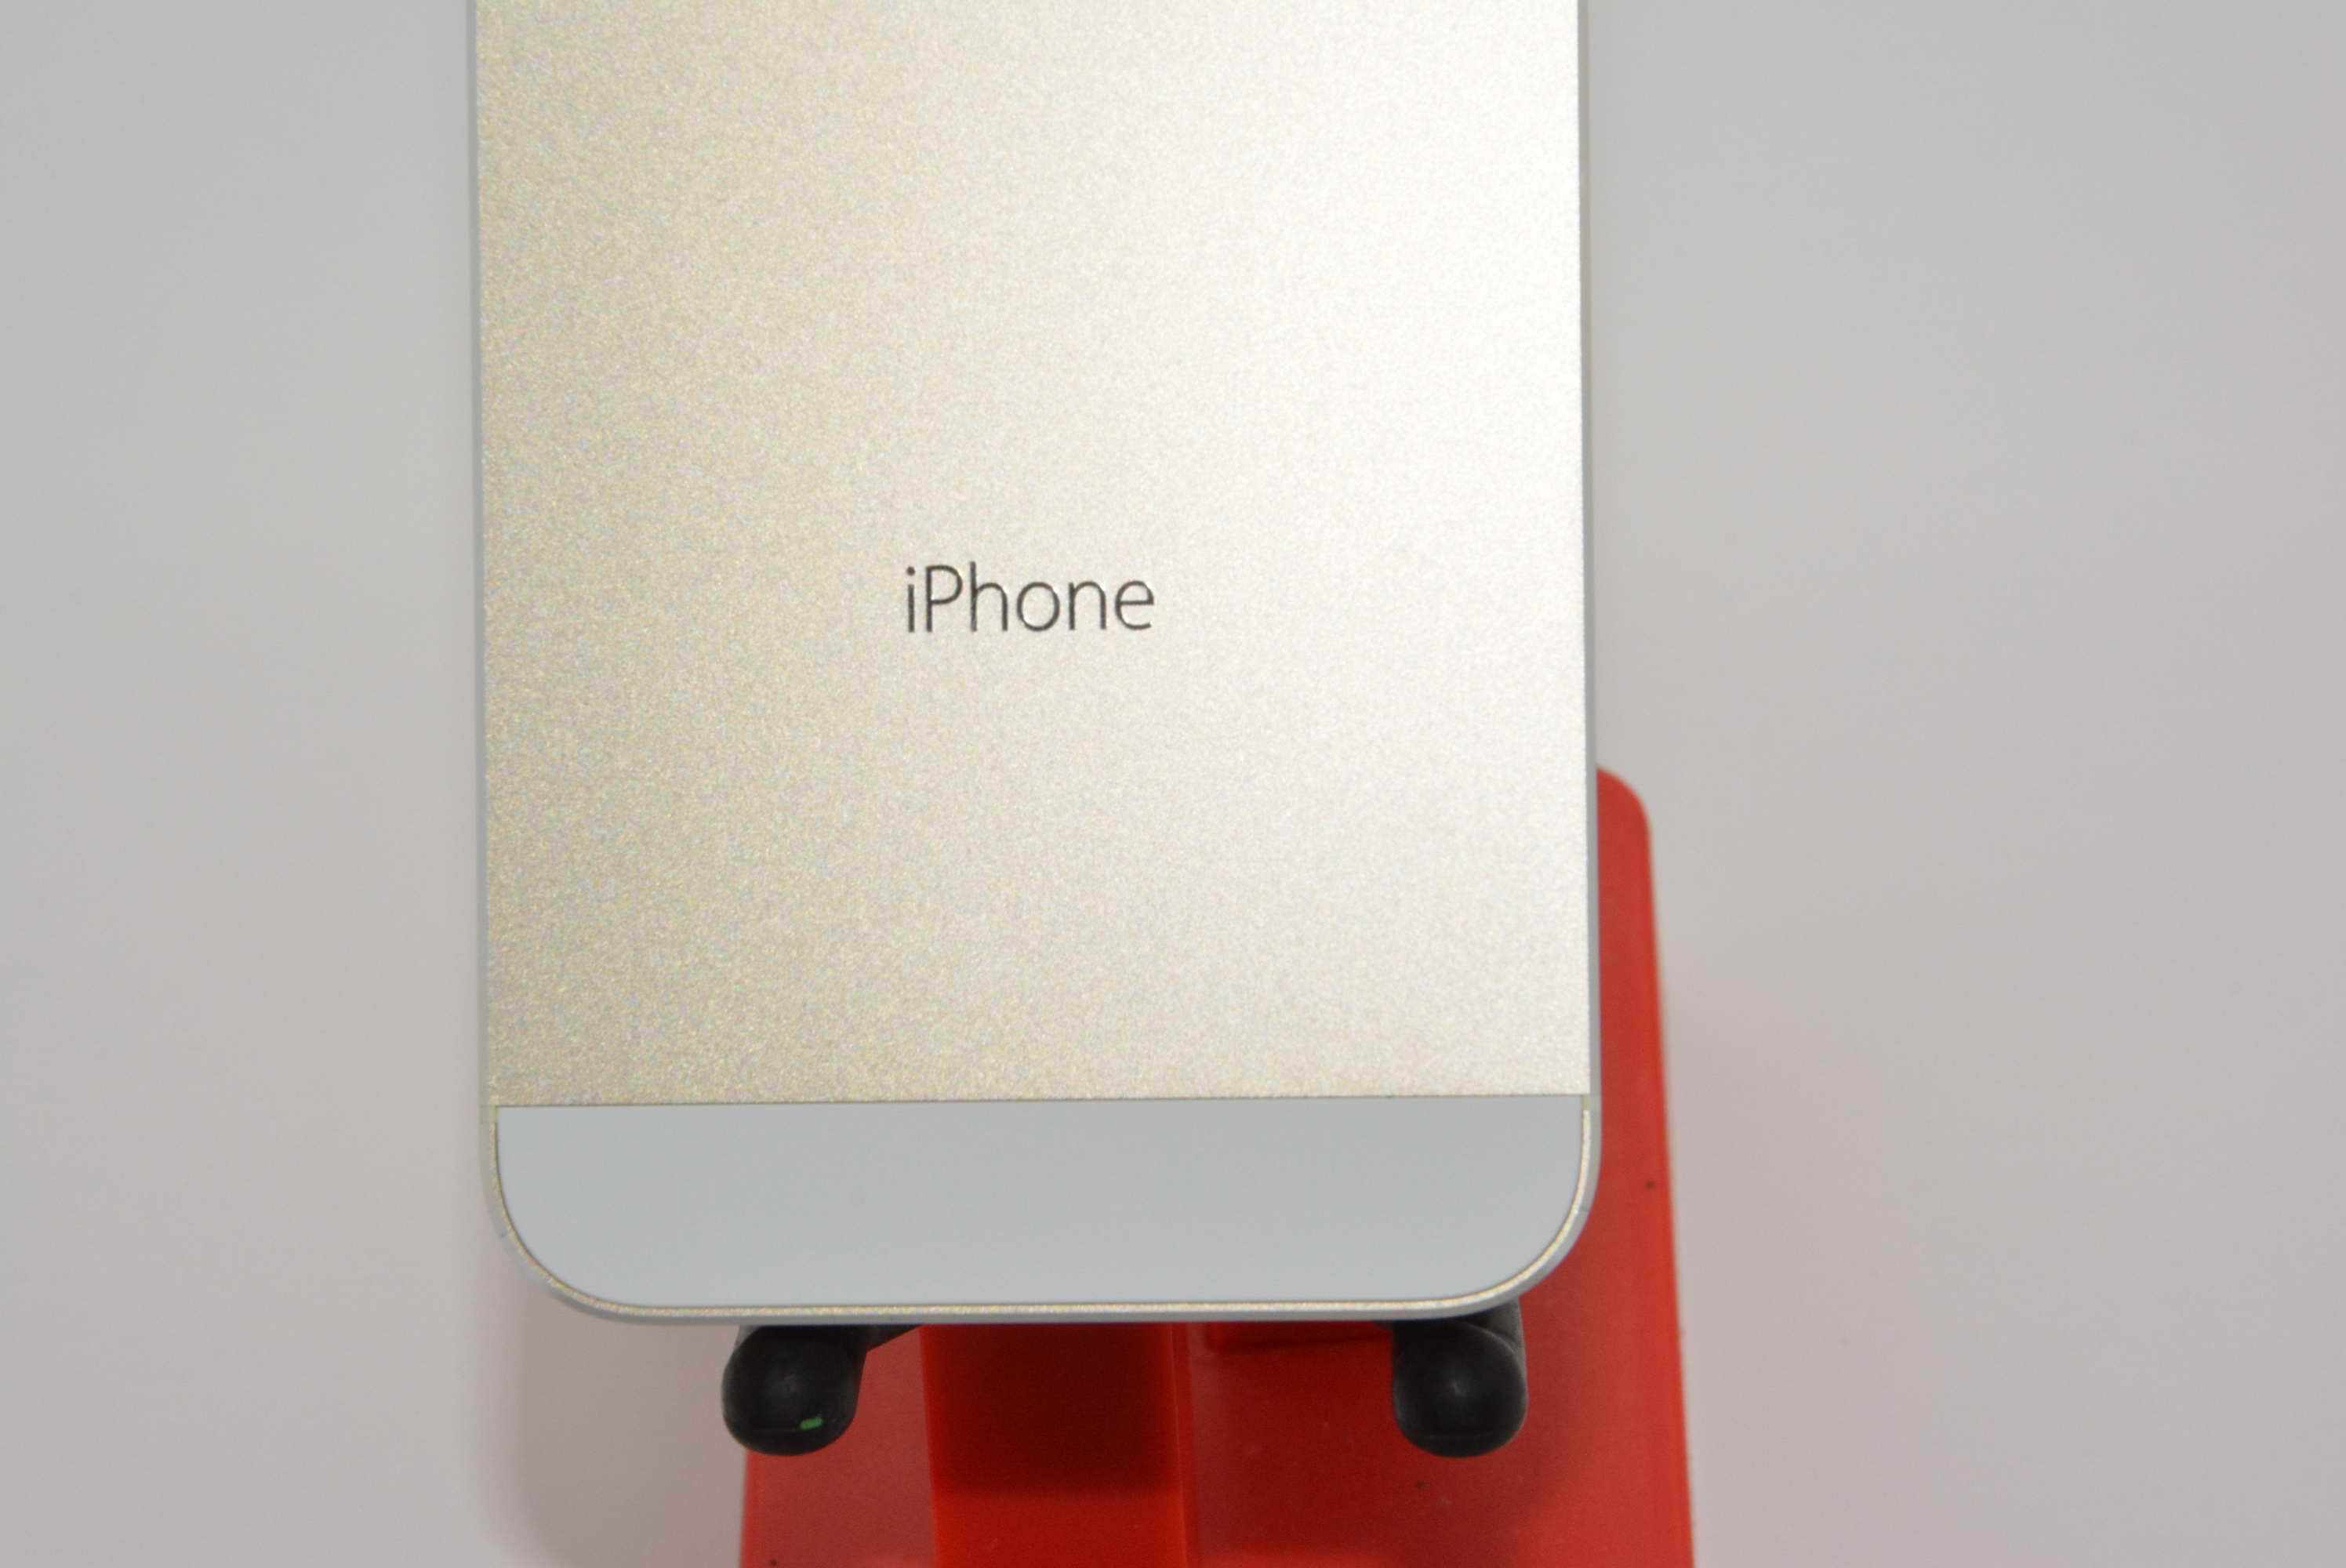 Altın renkli iPhone 5S modeli ile ilgili yeni bir görsel paylaşıldı